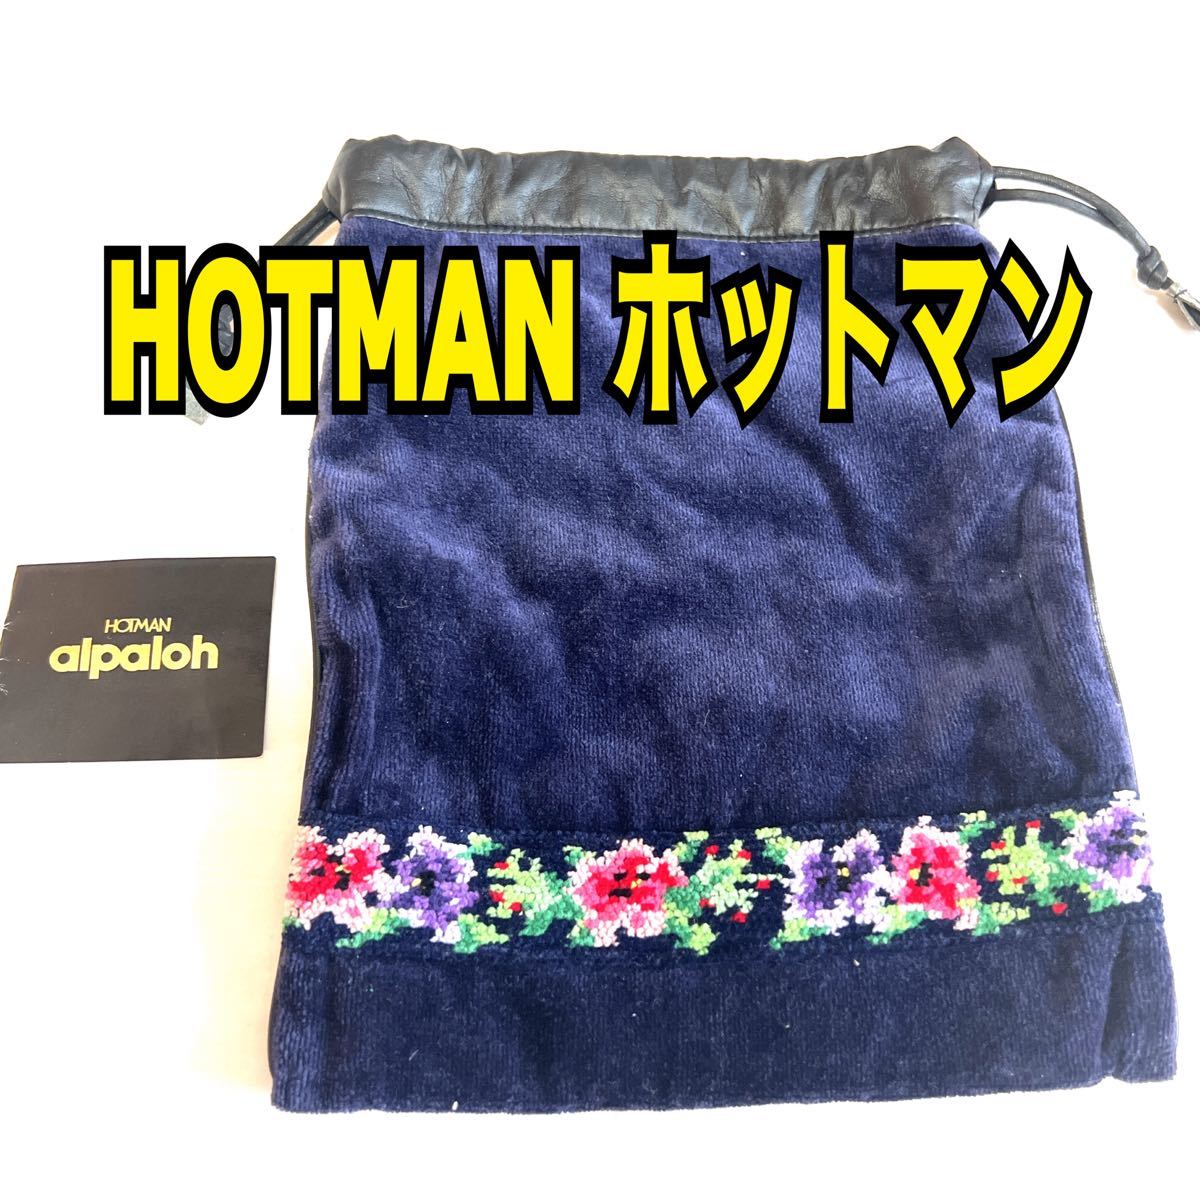 alpaloh アルパロ シュニール織り 巾着 HOTMAN ホットマン